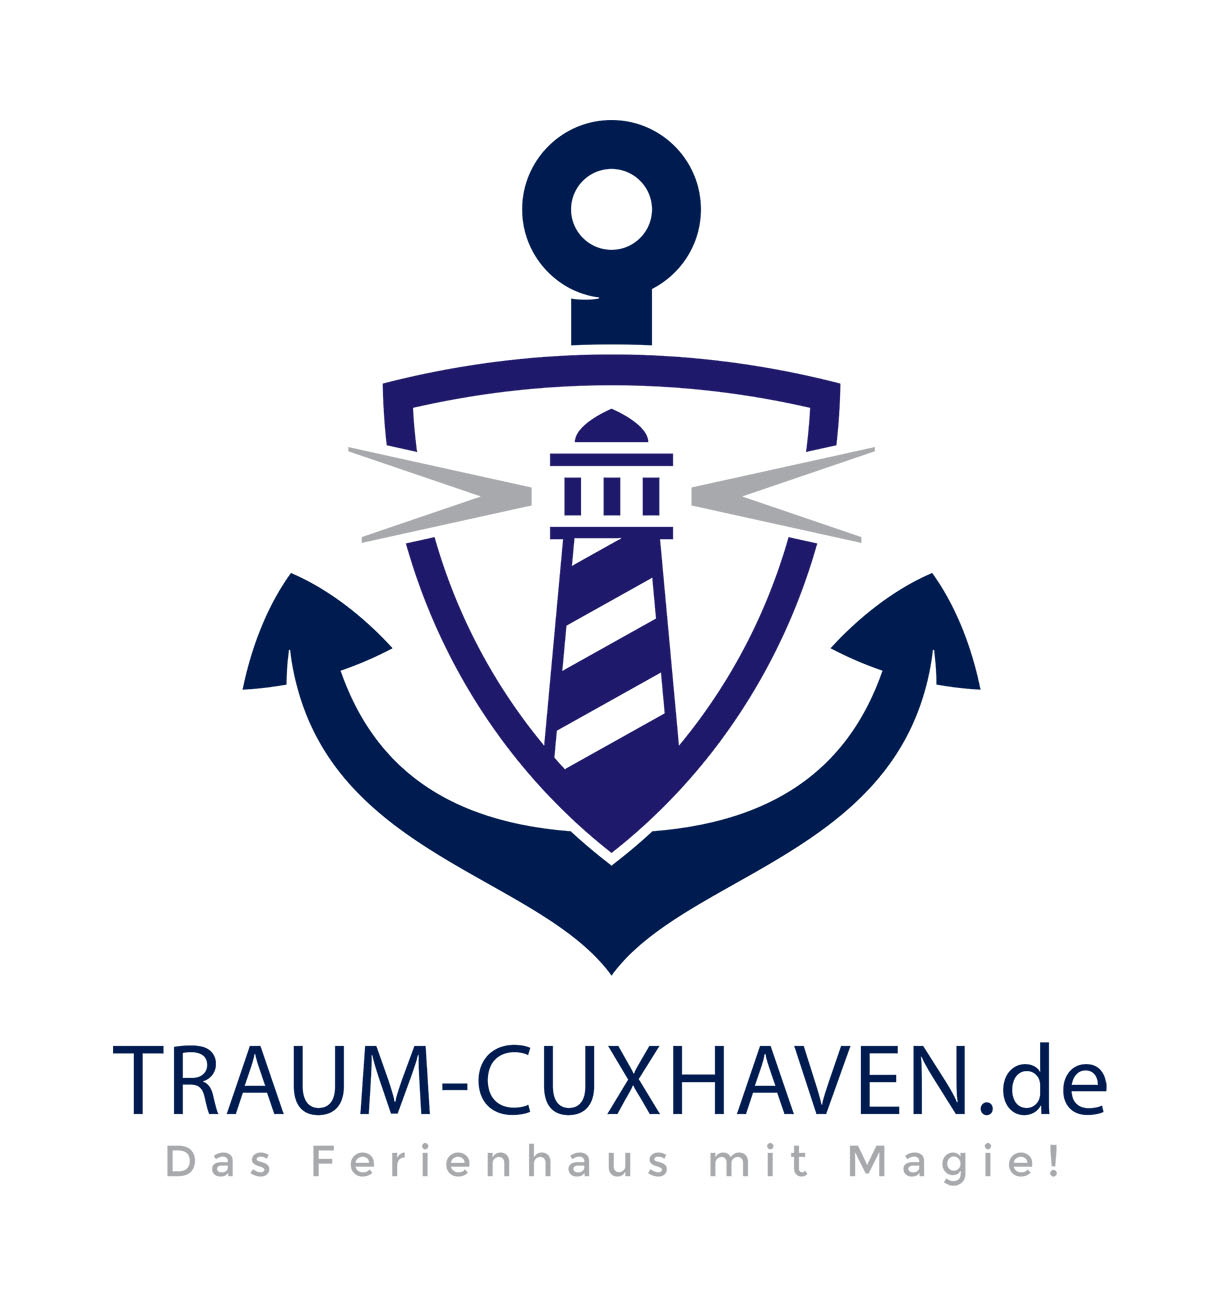 ferienhaus-cuxhaven-logo